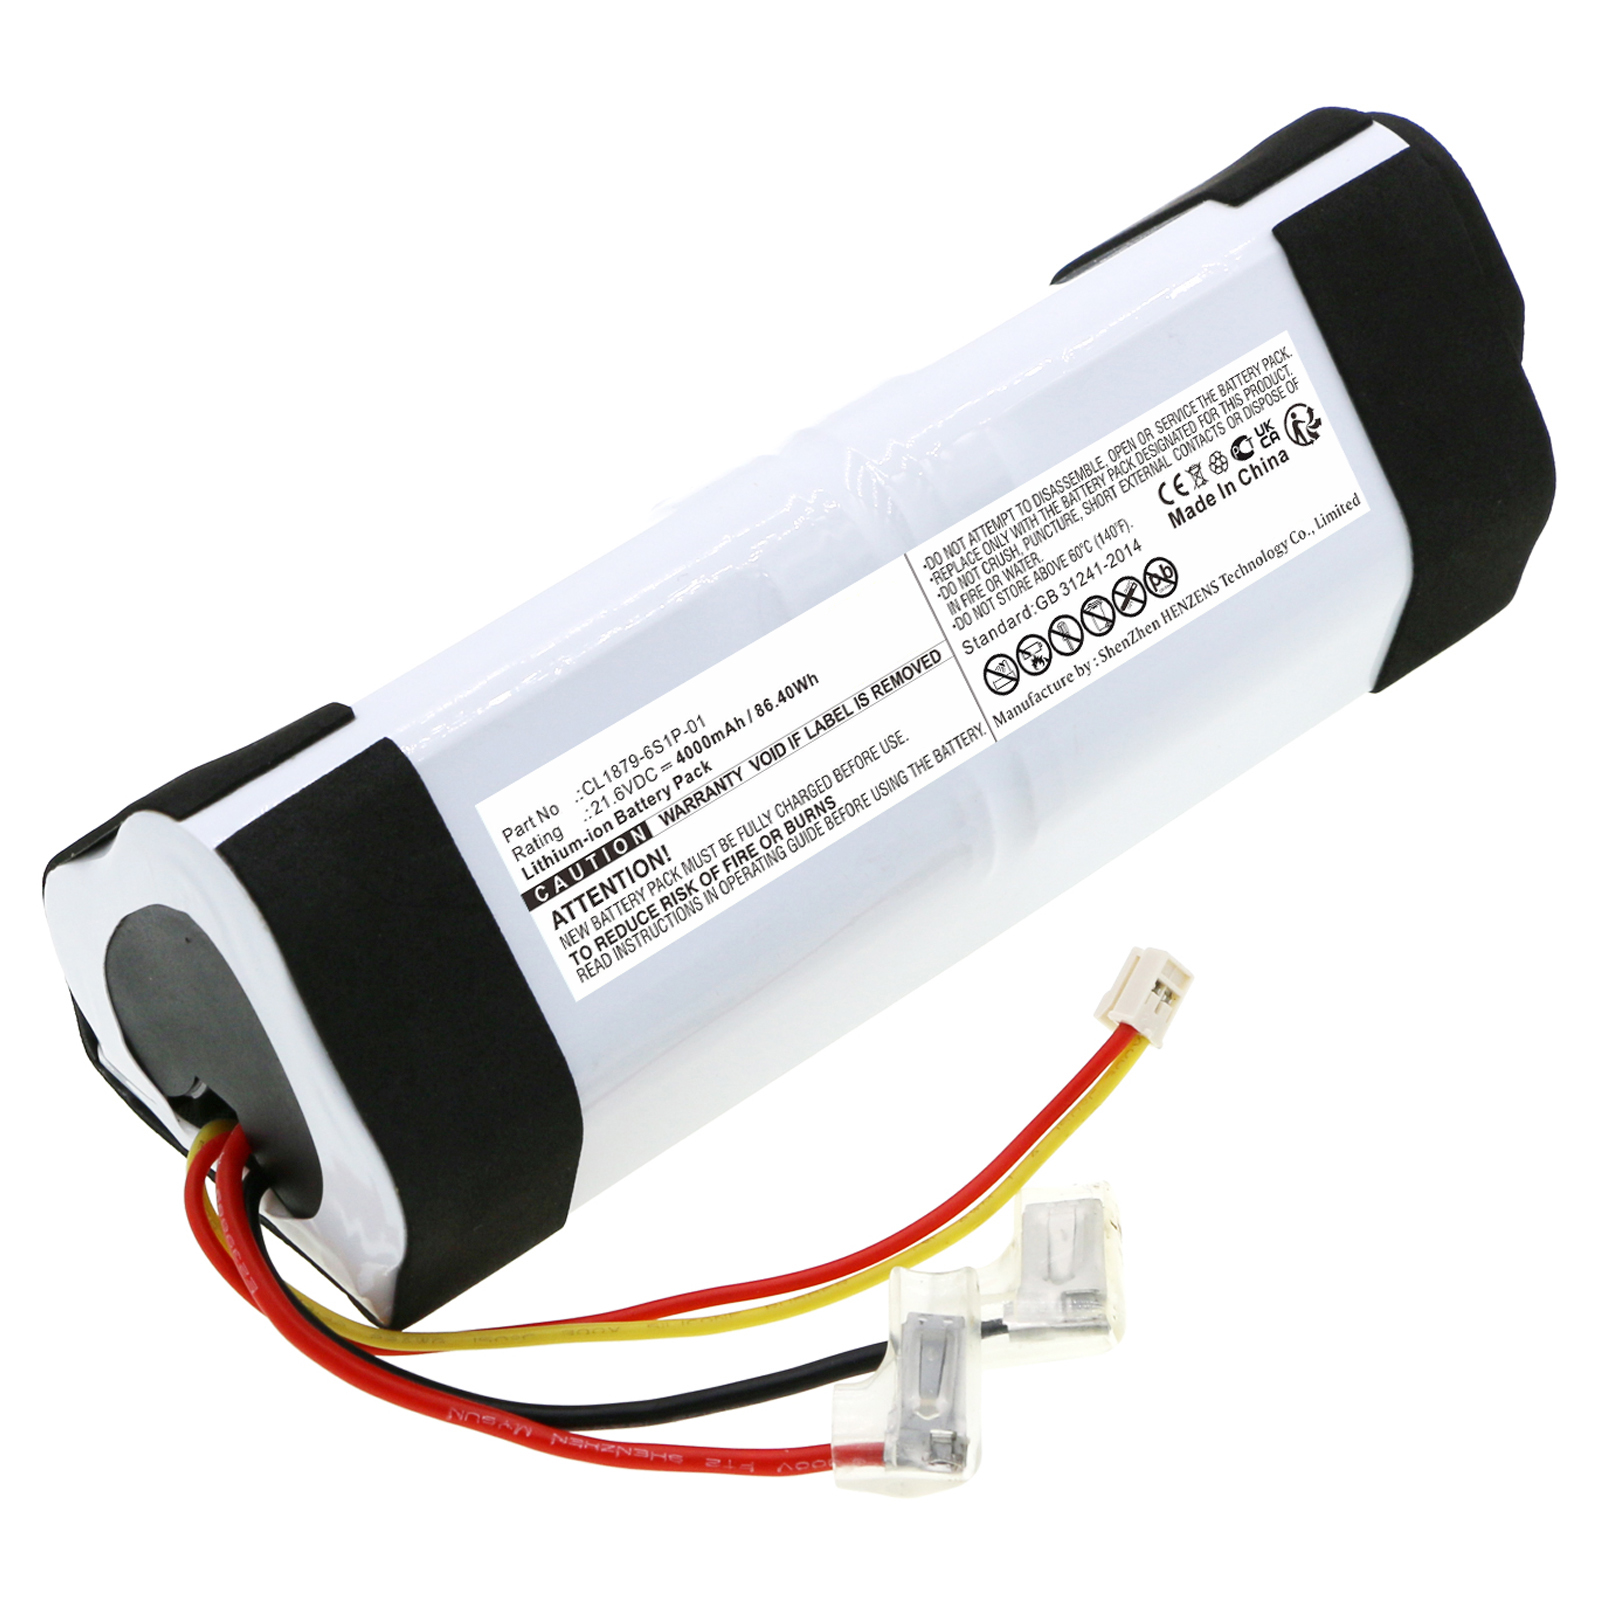 Synergy Digital Vacuum Cleaner Battery, Compatible with Tineco CL1879-6S1P-01 Vacuum Cleaner Battery (Li-ion, 21.6V, 4000mAh)